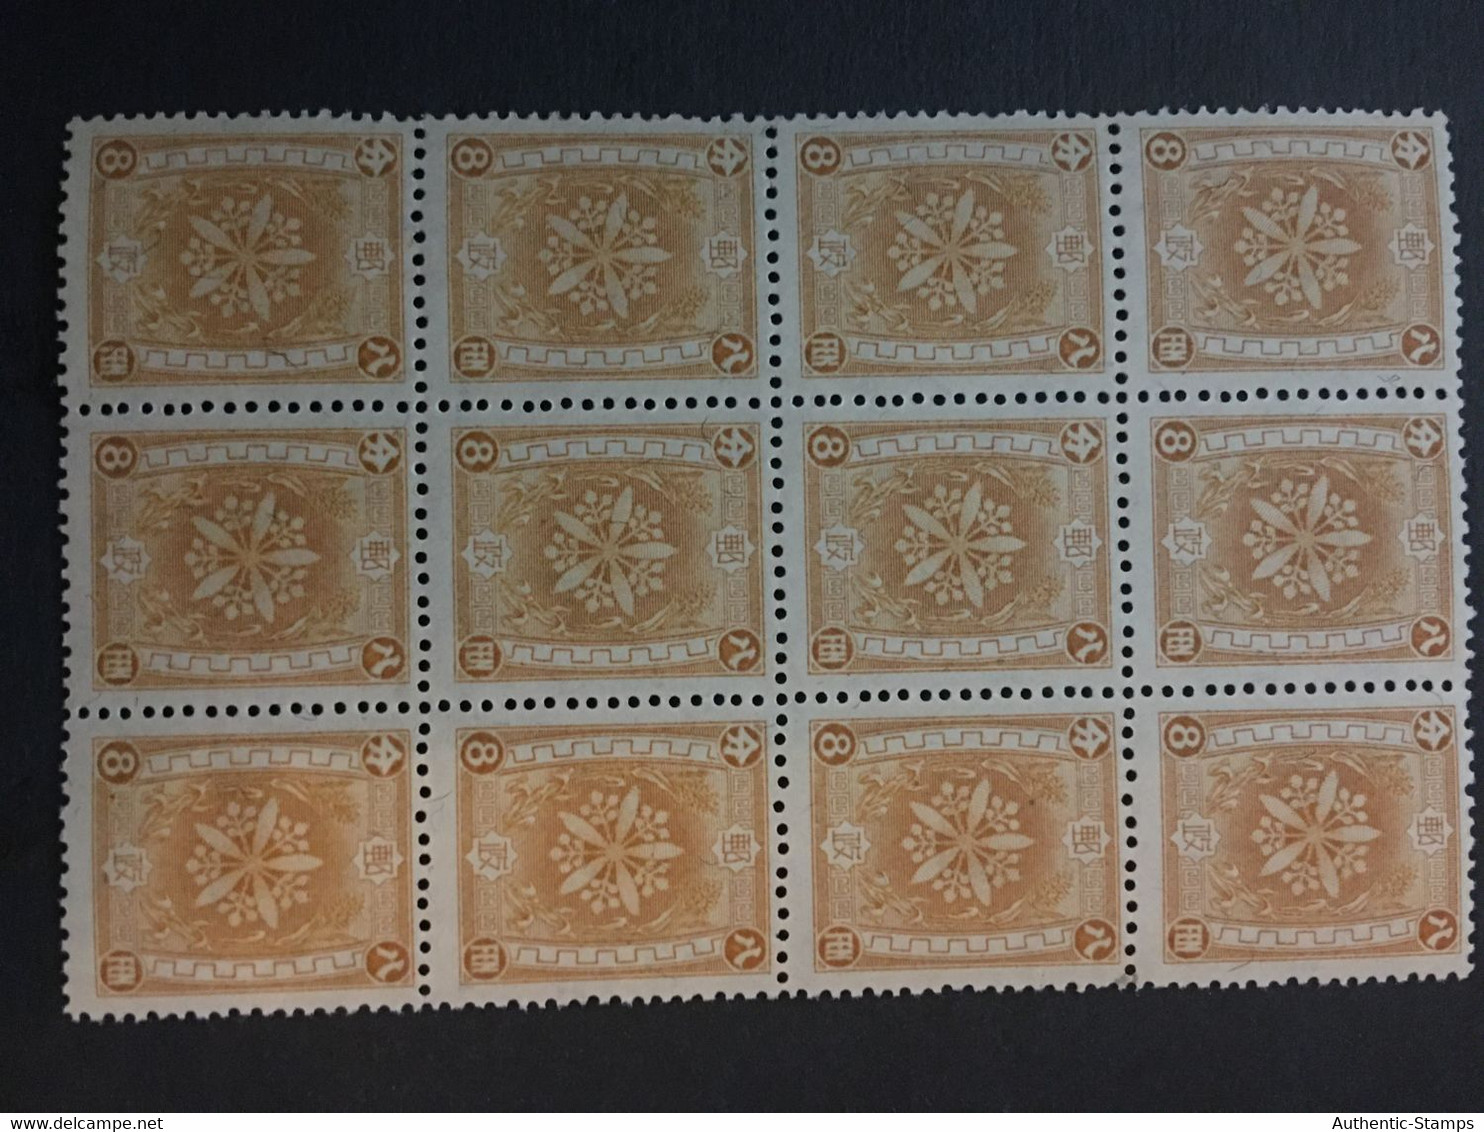 CHINA  STAMP,  MNH, Original Gum, Watermark, UNUSED, TIMBRO, STEMPEL, CINA, CHINE, LIST 3819 - 1932-45  Mandschurei (Mandschukuo)